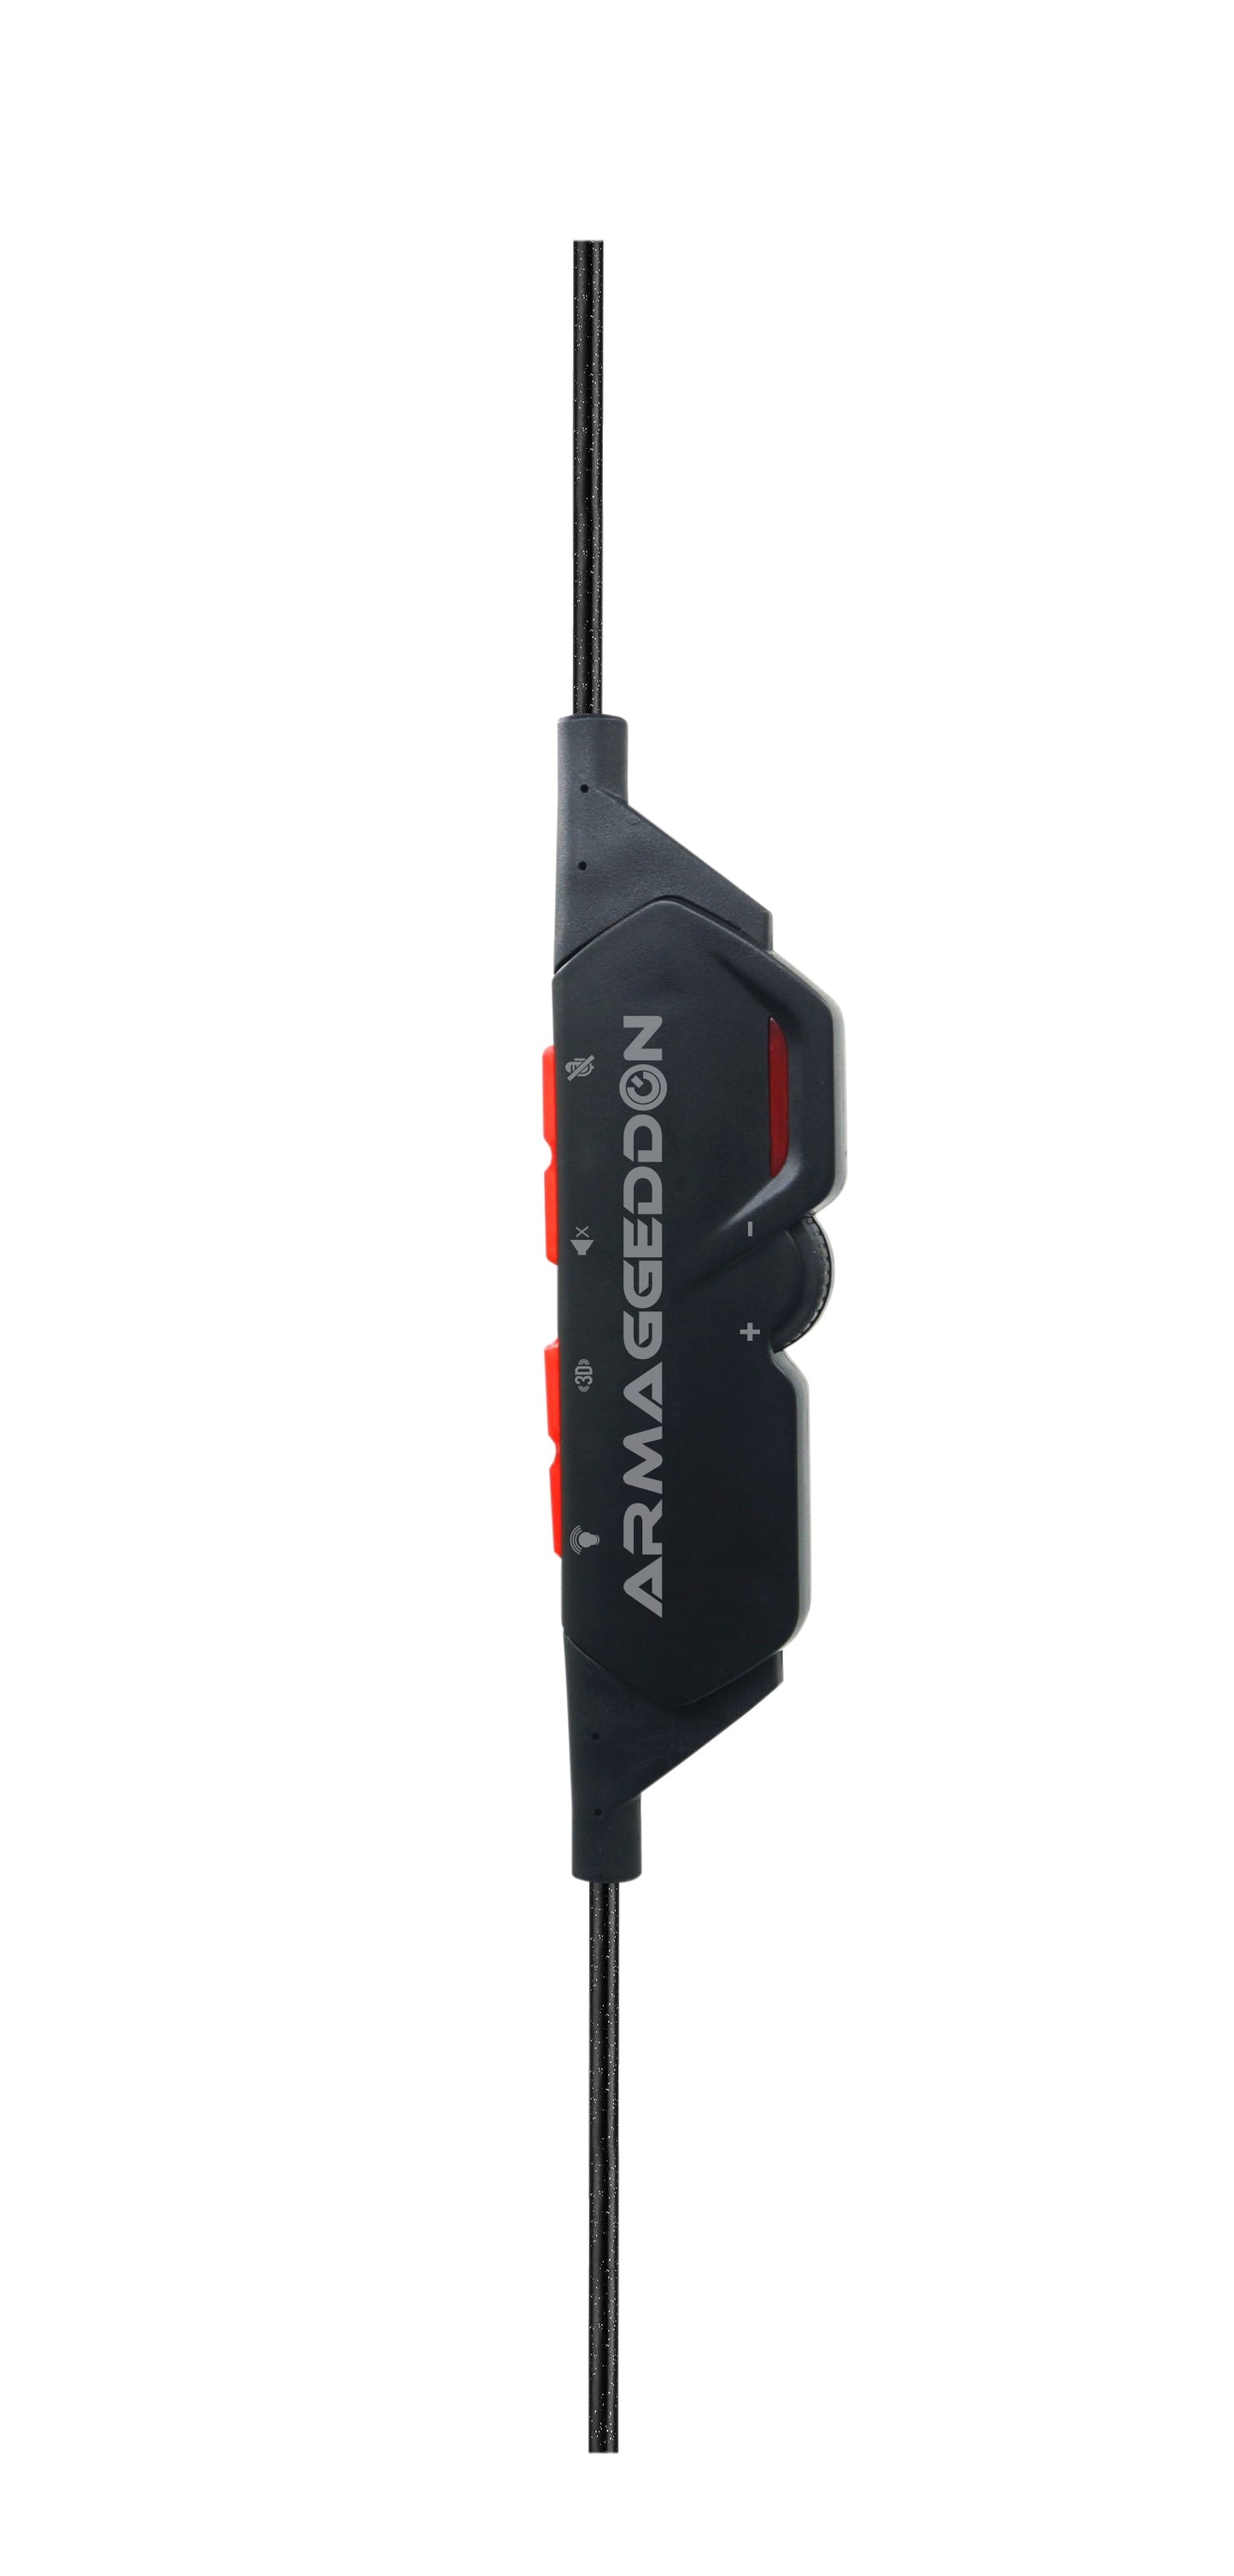 Armaggeddon Nuke 9 Pro-Gaming Headset